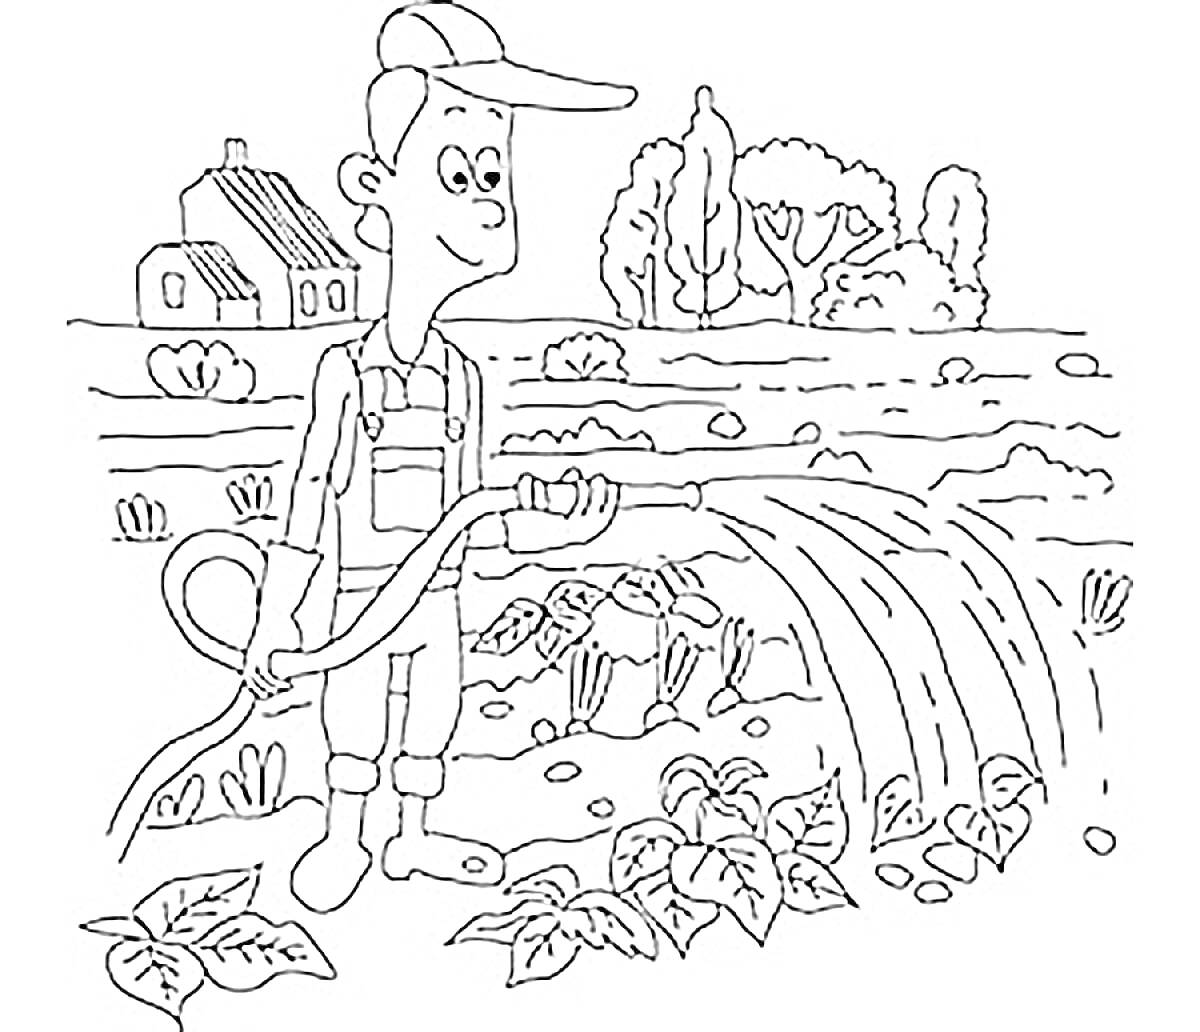 Человек поливает растения на огороде с помощью шланга, на заднем плане дом и деревья